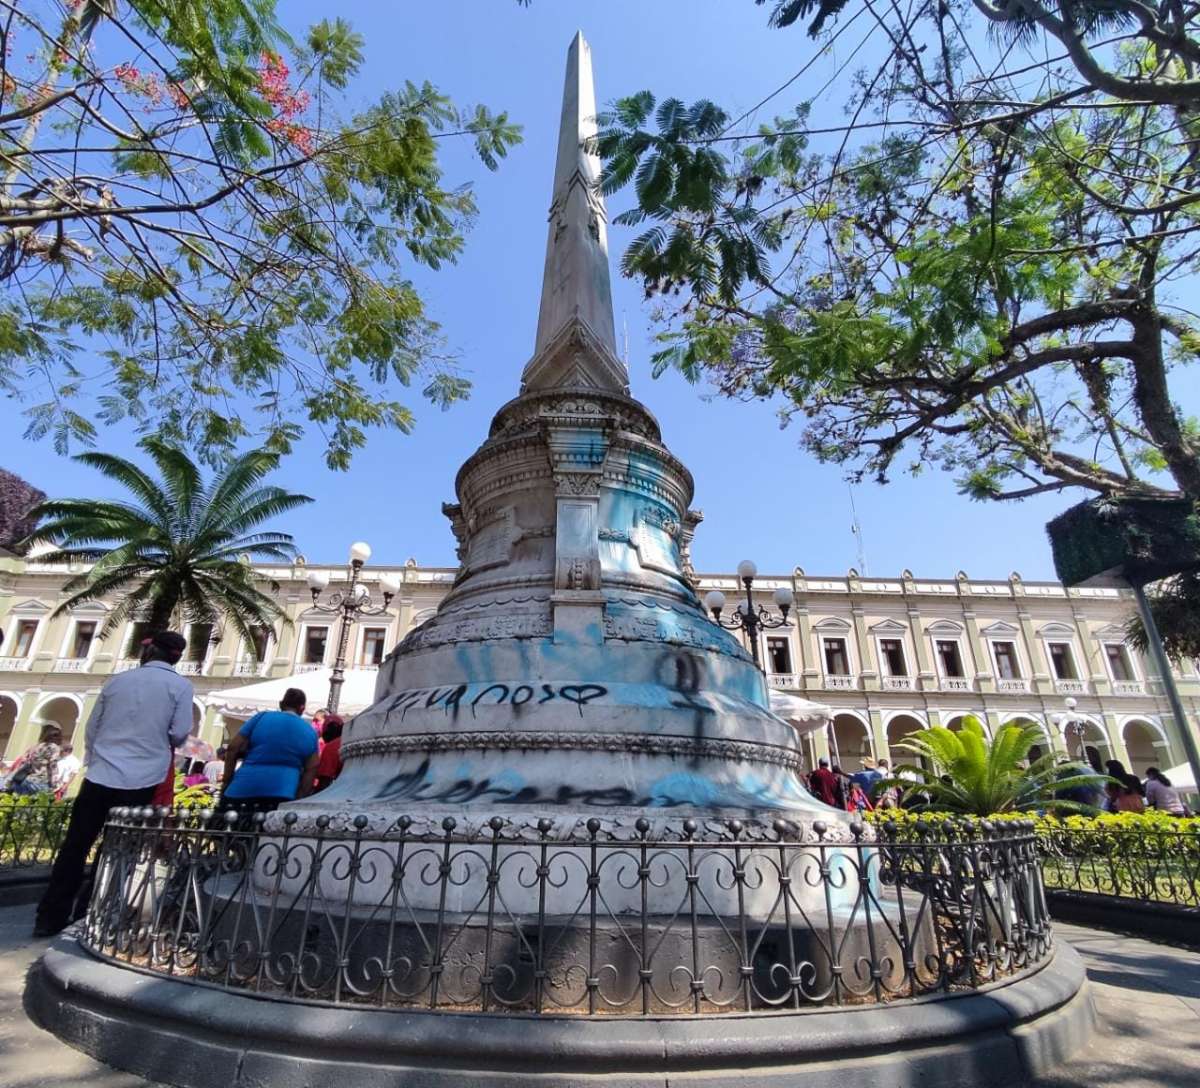 Presenta Ayuntamiento proyecto para retiro de graffiti en Obelisco del parque 21 de Mayo